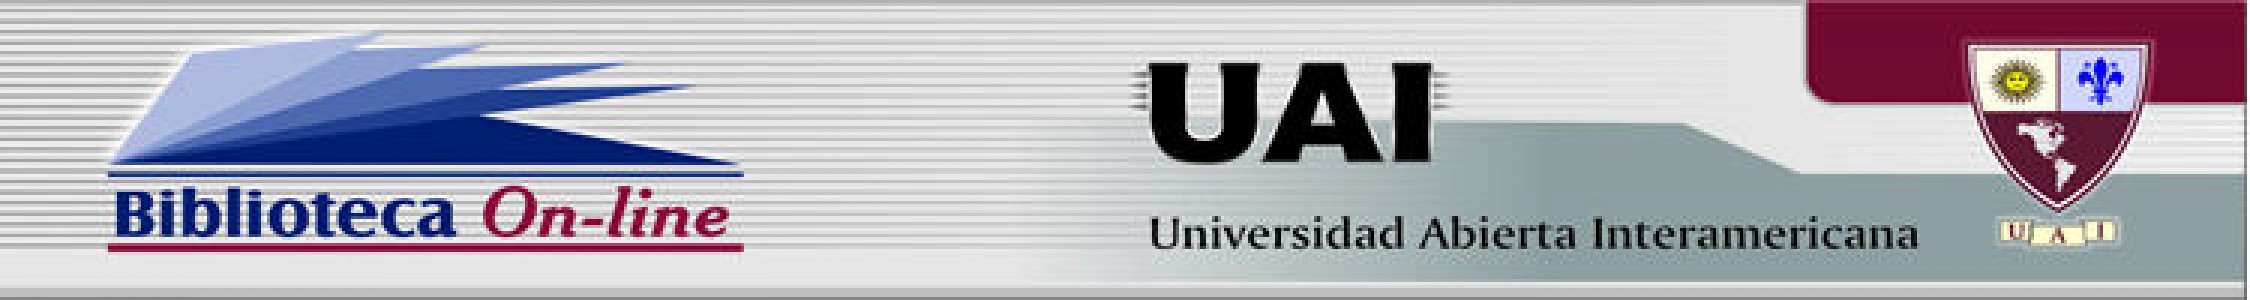 Universidad Abierta Interamericana. Sistema De Bibliotecas Vaneduc - Biblioteca Central